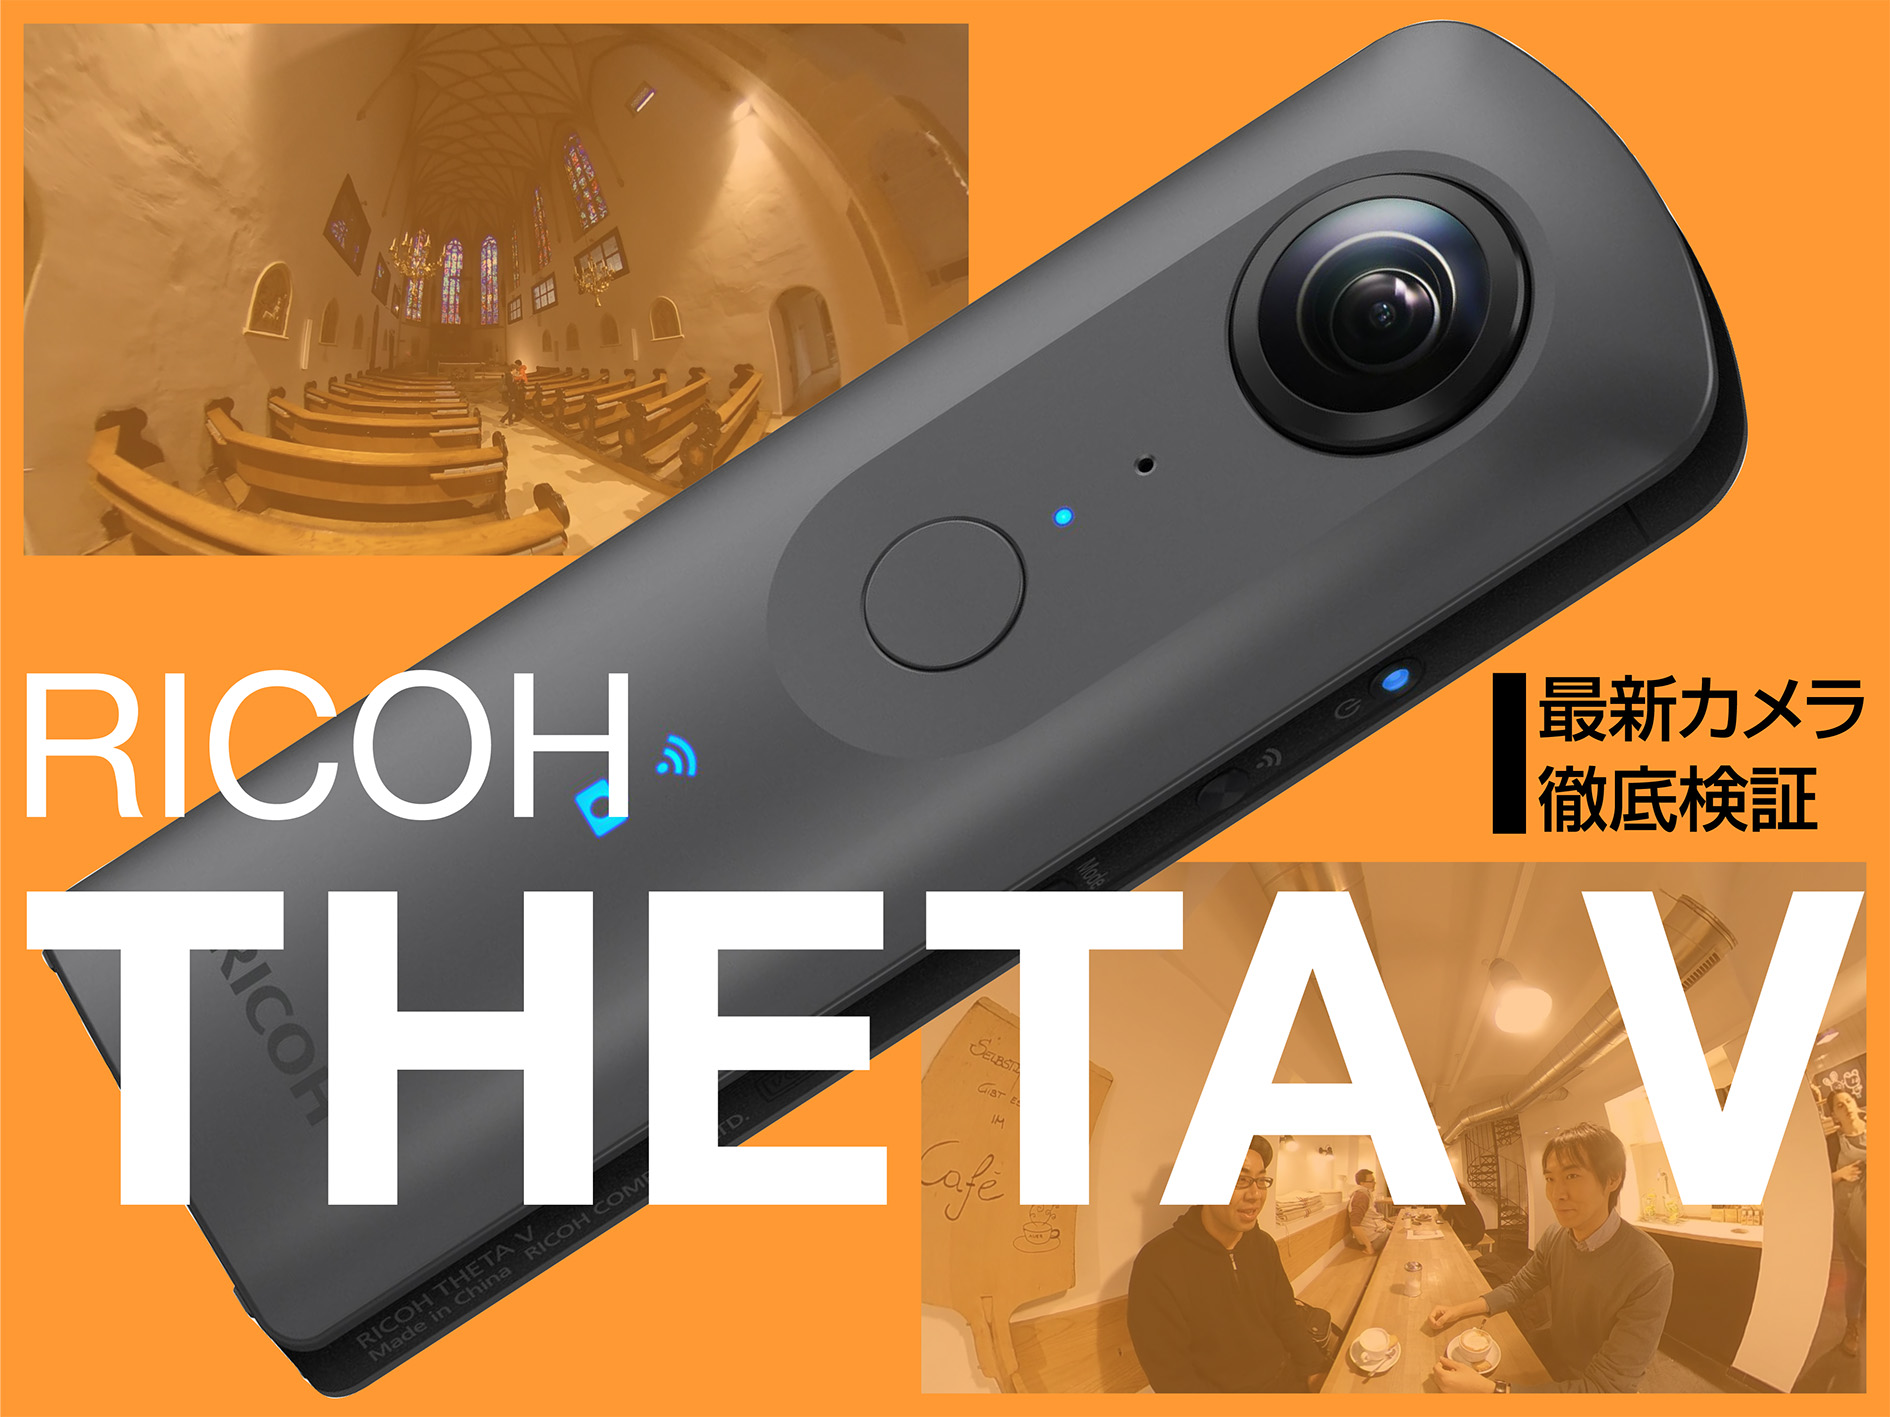 お気に入 RICOH THETA V メタリックグレー 360度カメラ 手ブレ補正機能搭載 4K動画 360度空間音声 Android OS搭載で機能拡張に対応 